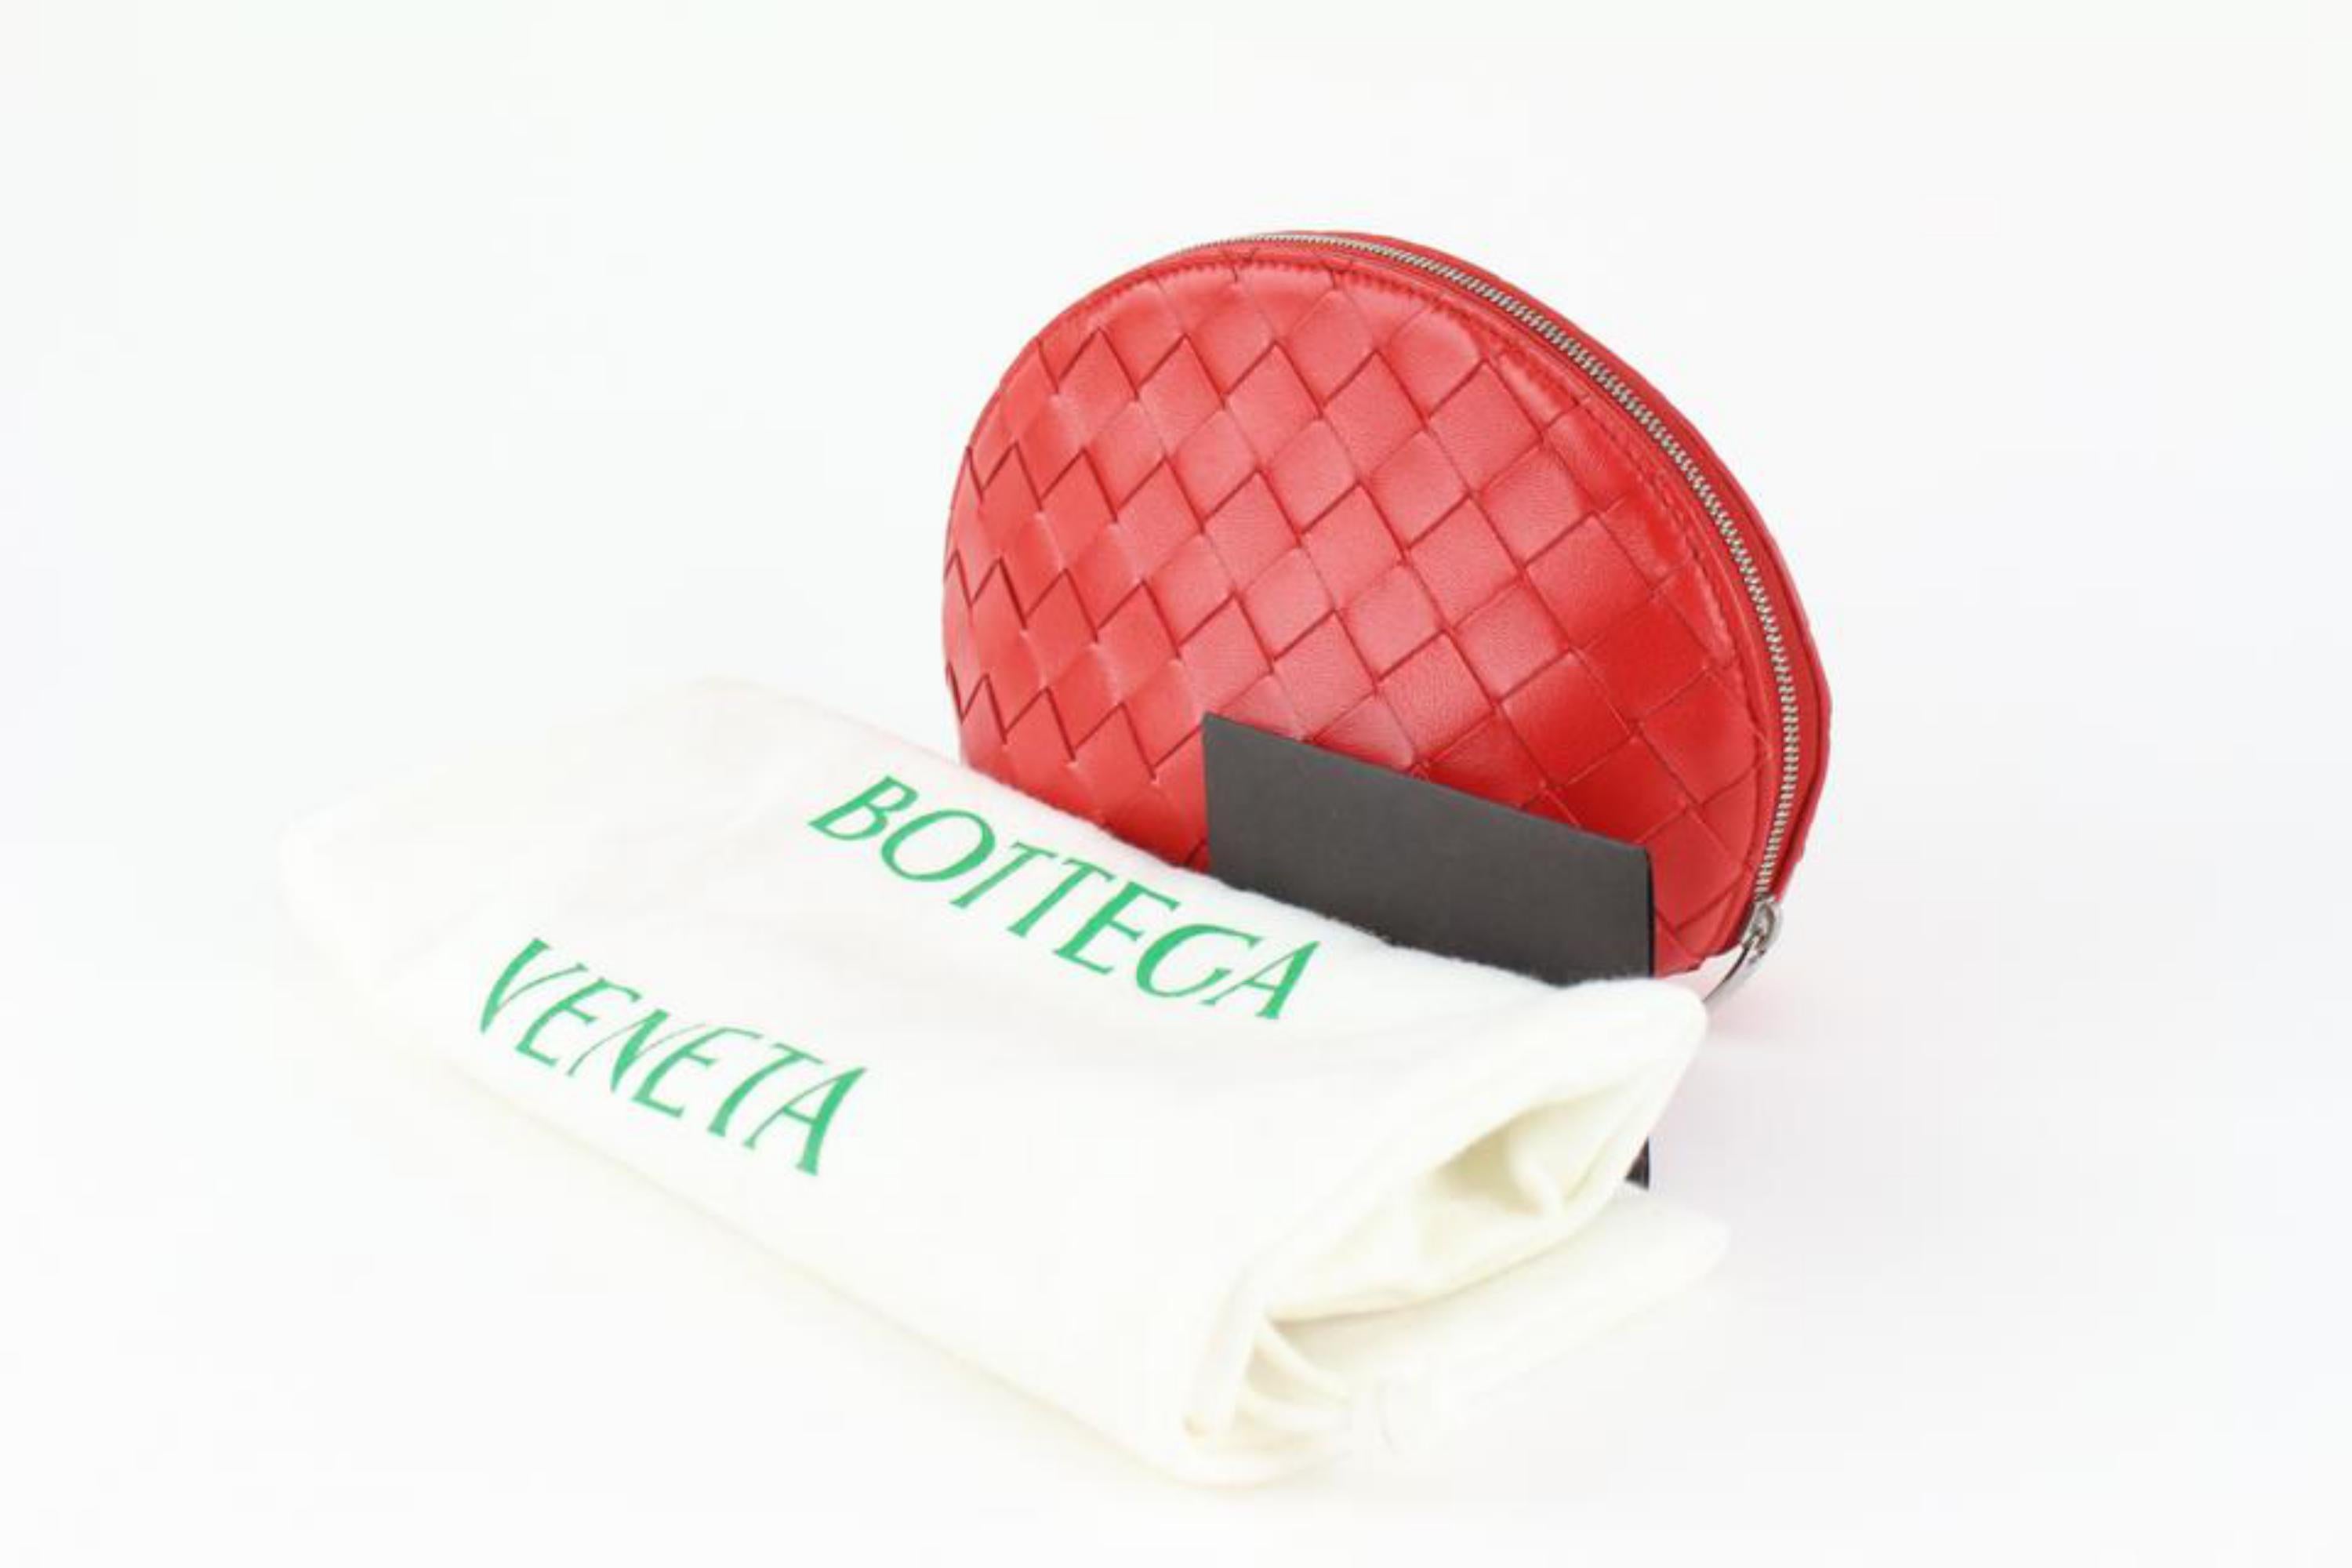 Bottega Veneta Pochette à cosmétiques ovale en cuir rouge Intrecciato 1123bv33
Numéro de date/numéro de série : B08642914P
Fabriqué en : Italie
Mesures : Longueur :  8